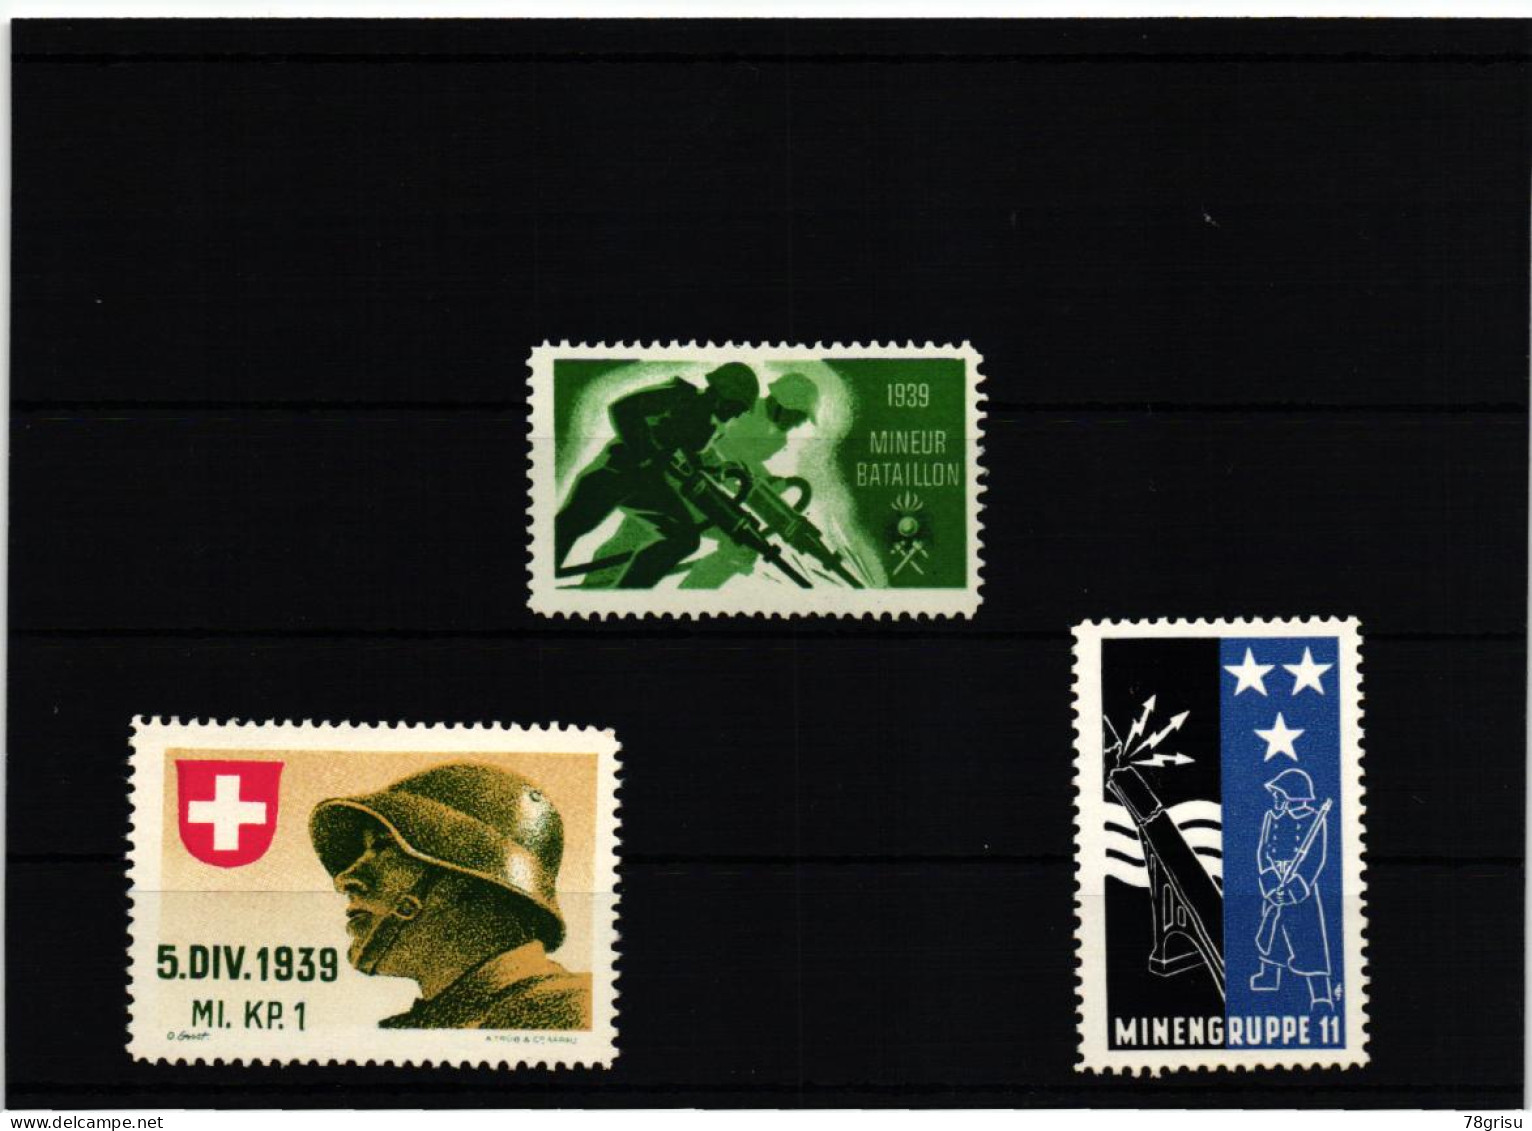 Schweiz Soldatenmarken, MINIEUR BATAILLON; MINENGRUPPE; MI. KP. 1939 - Vignetten